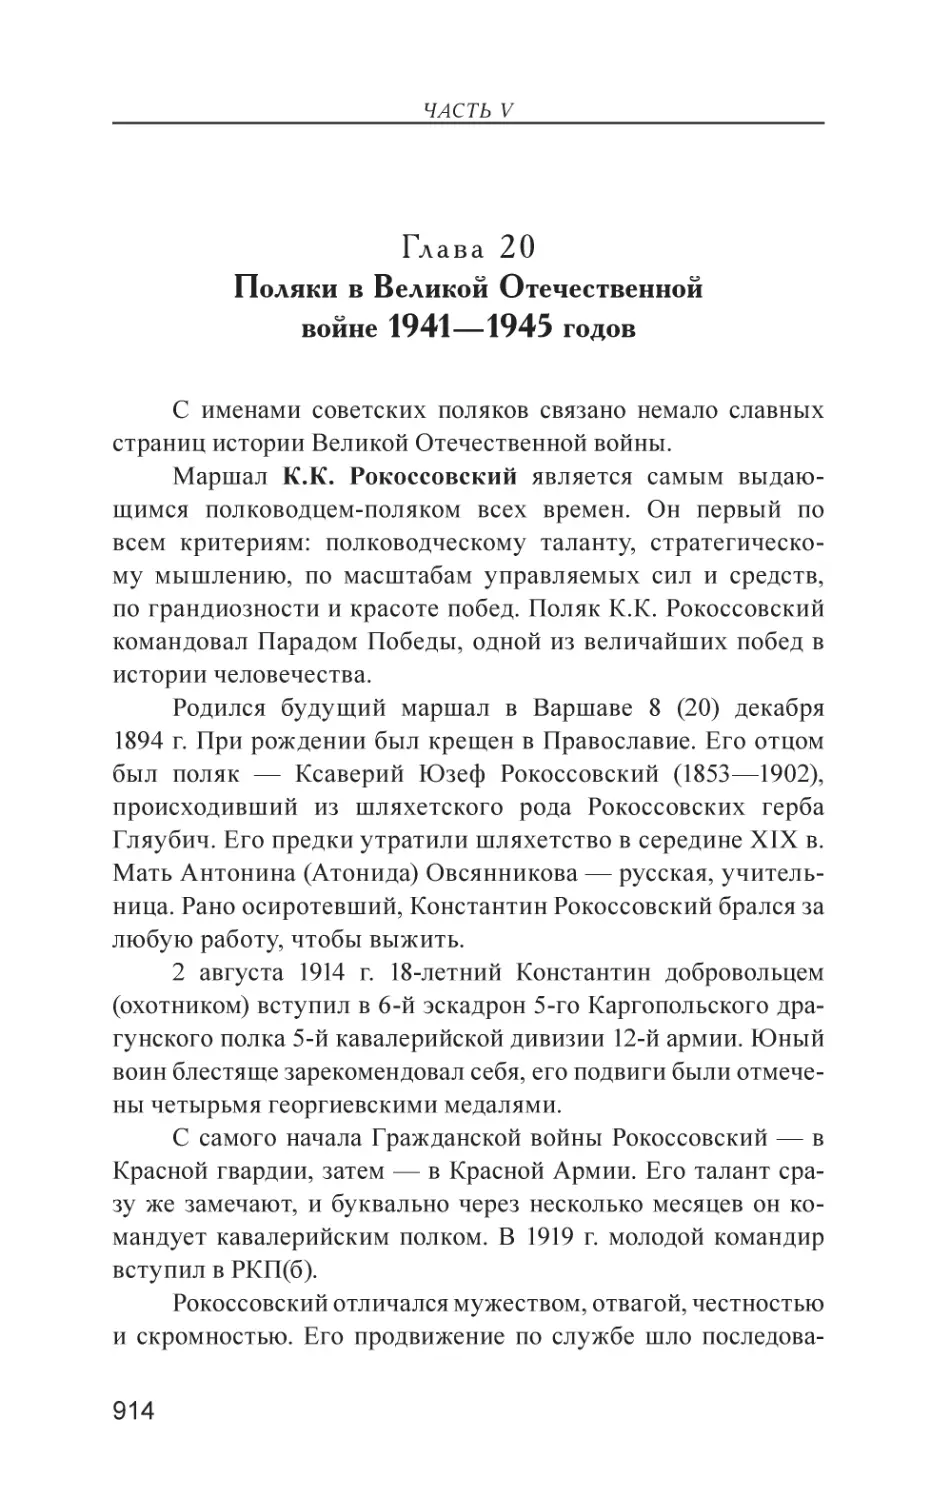 Глава 20. Поляки в Великой Отечественной войне 1941—1945 годах